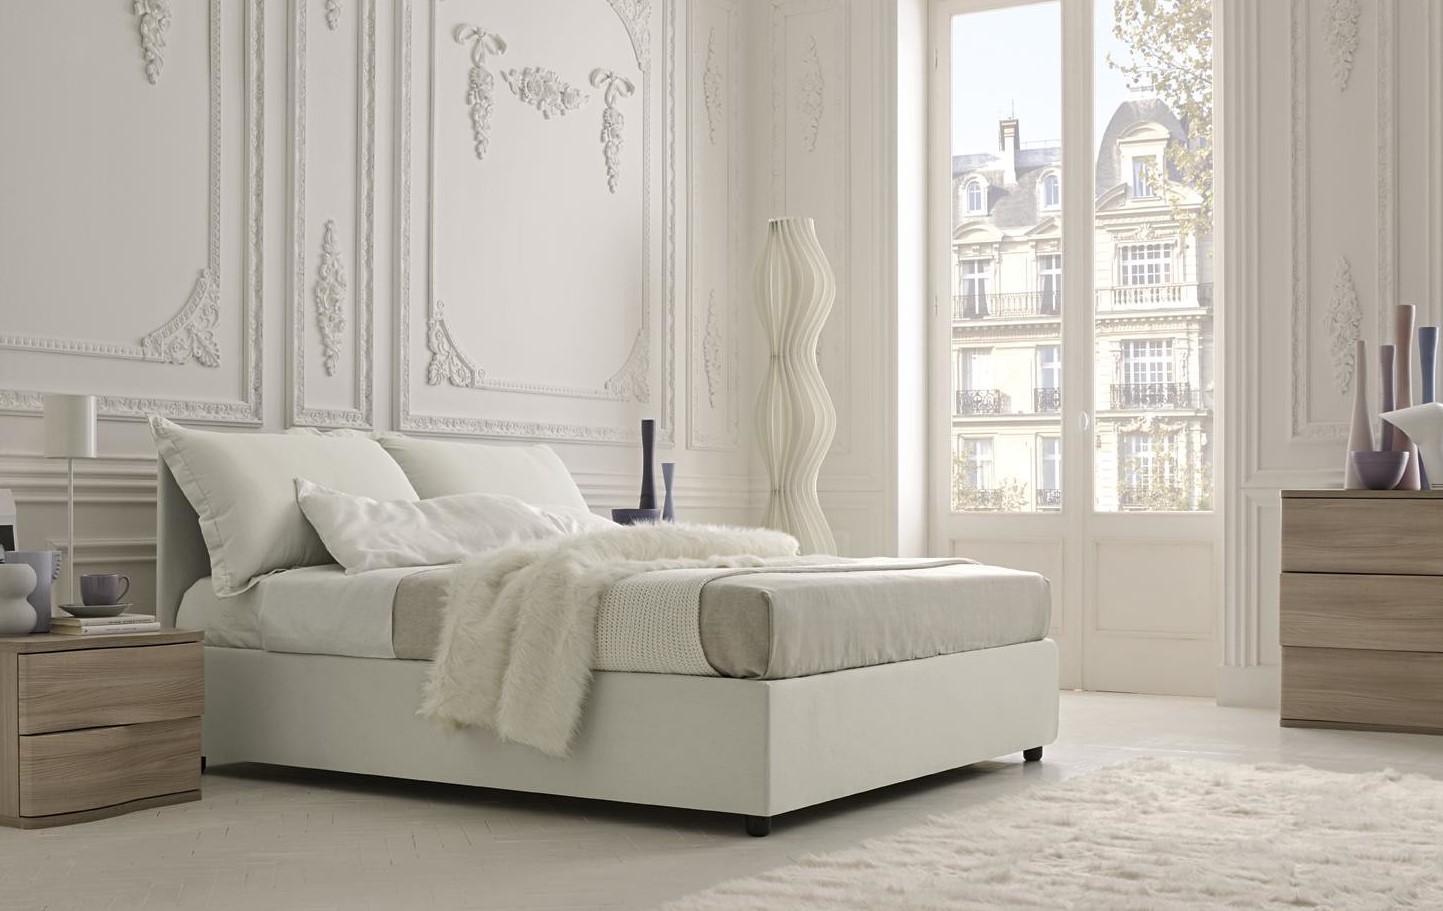 Белая кровать подходит под интерьер комнаты